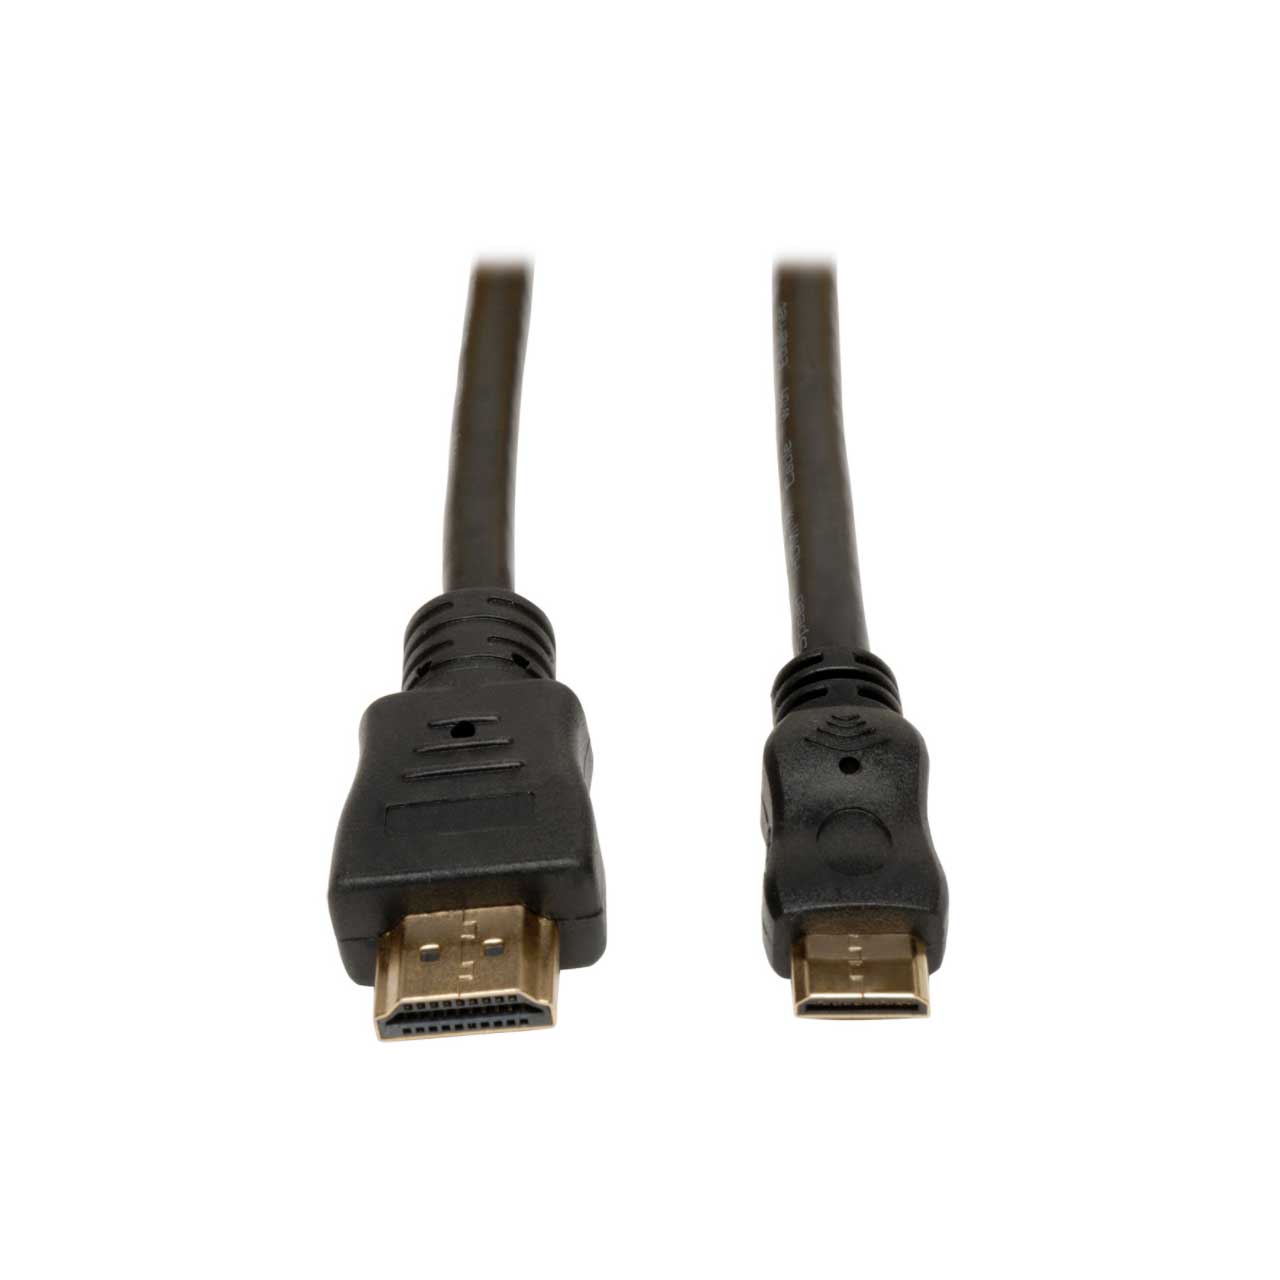 Lilliput HDMI - Mini HDMI Cable